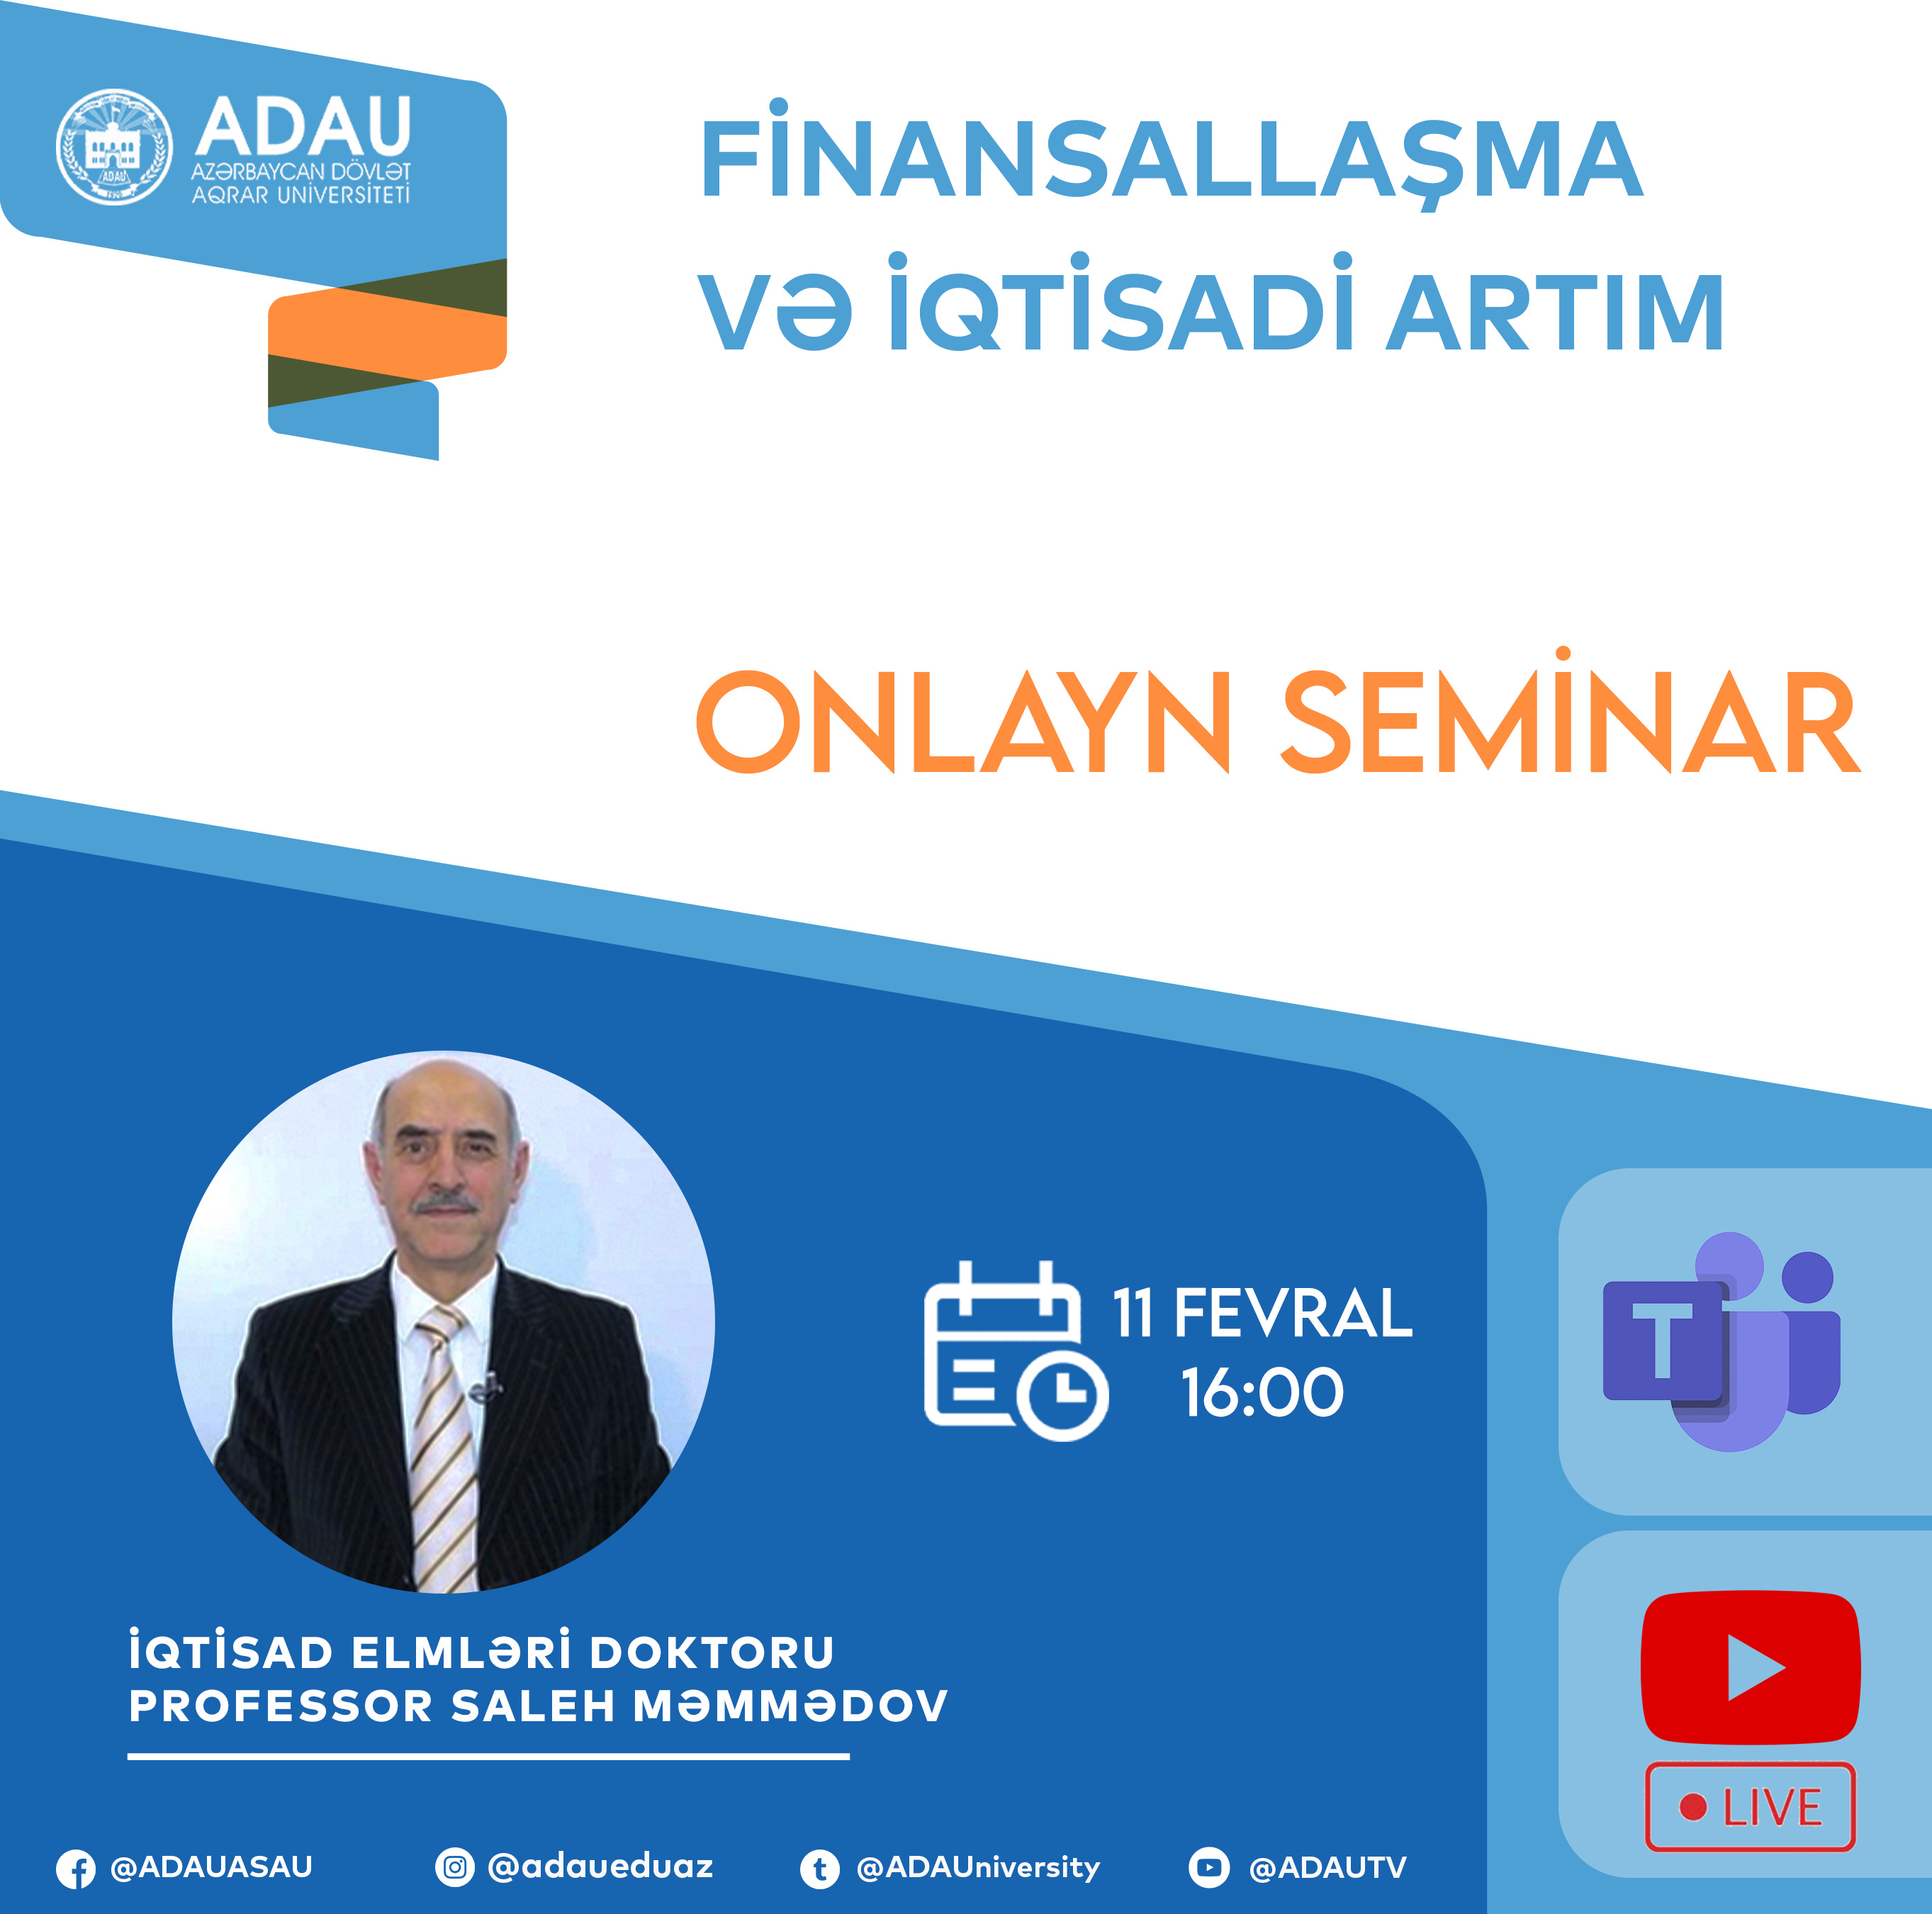 Finansallaşma və iqtisadi artım onlayn seminar